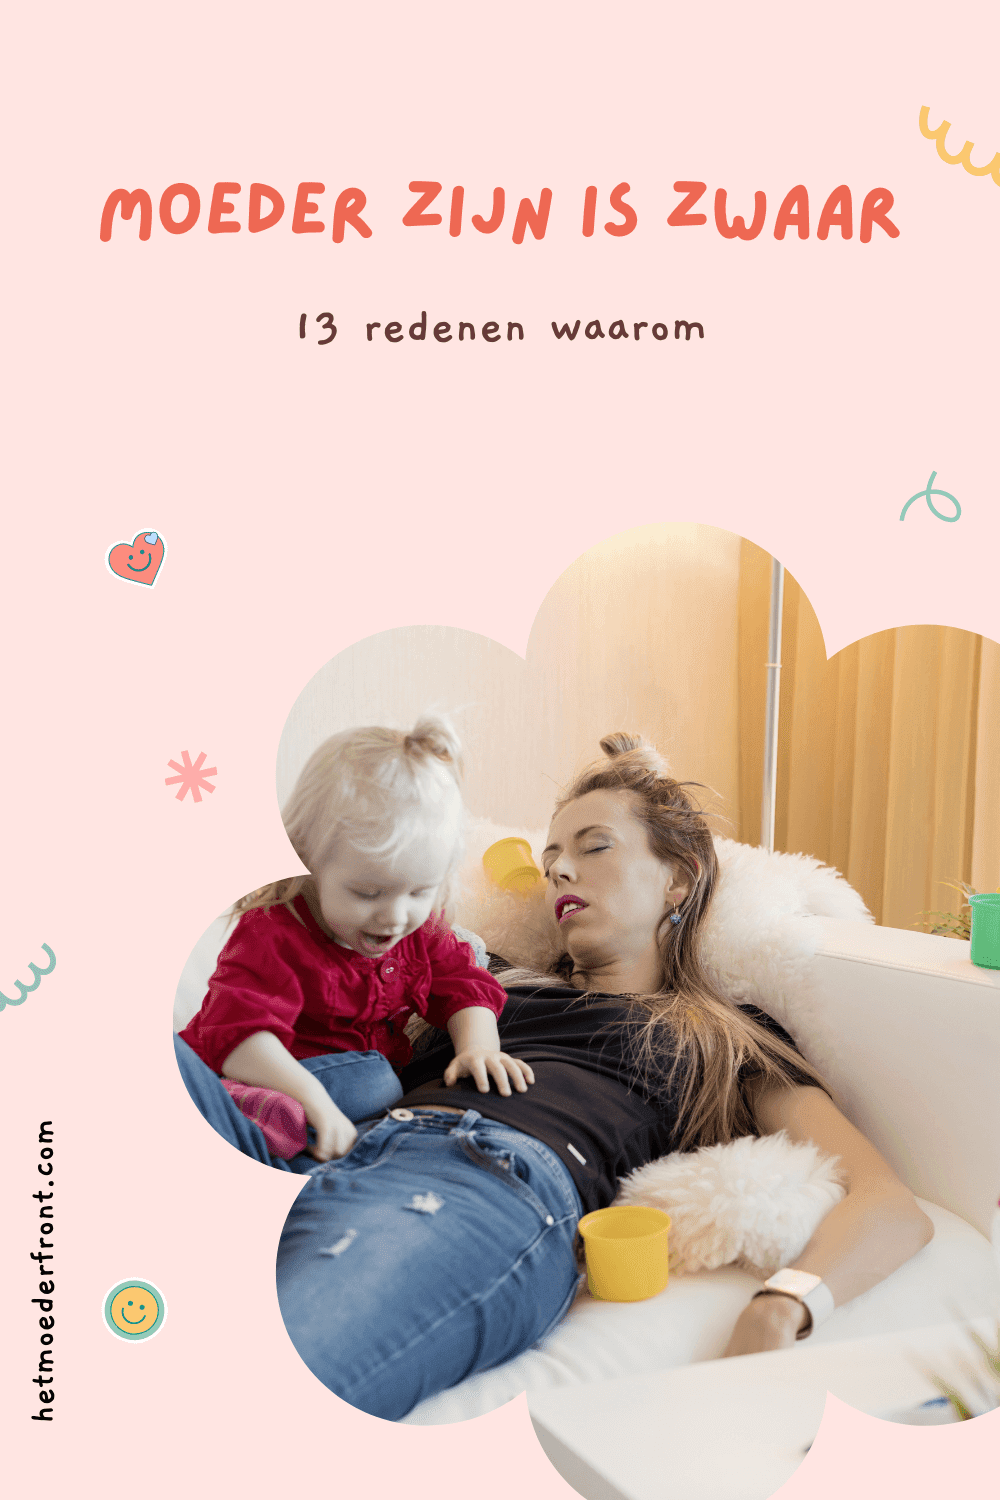 Moeder is zwaar: 13 redenen waarom Het